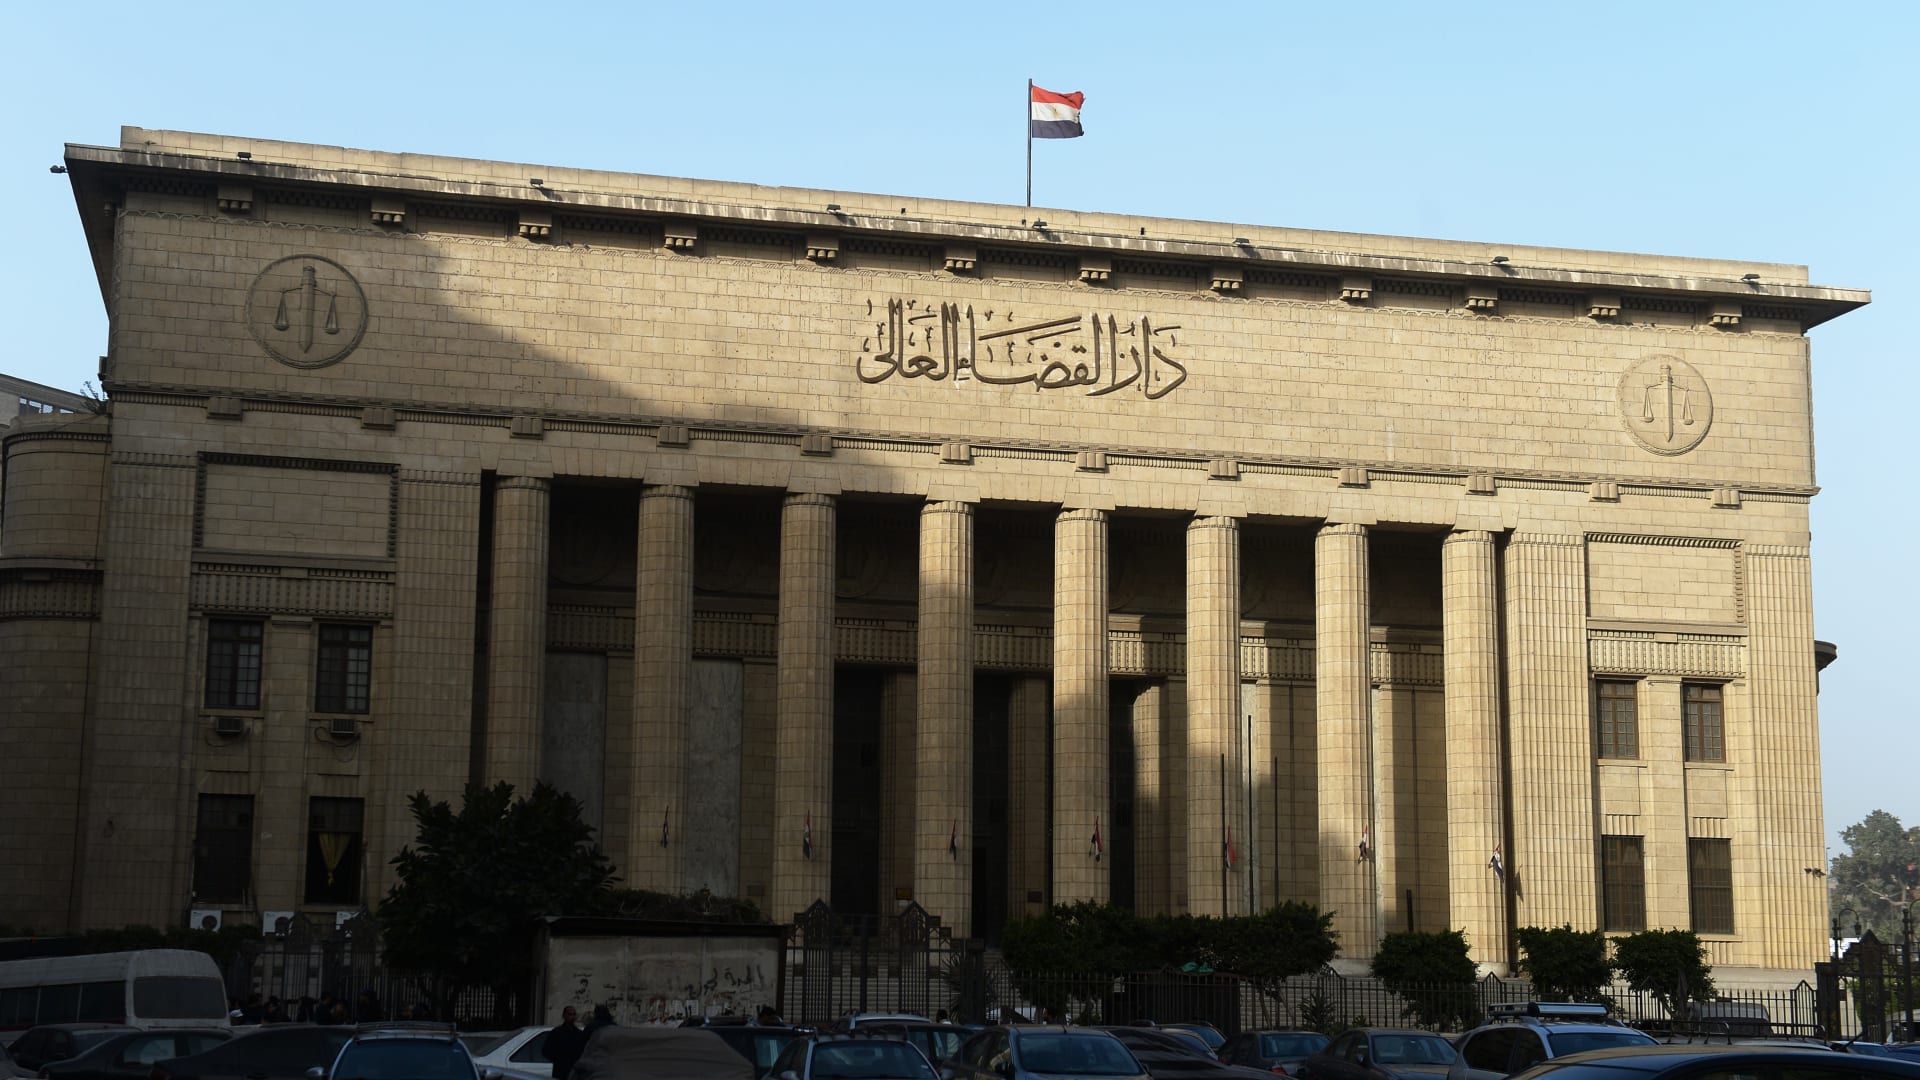 مصر: قطب إعلام سابق متهم بالاتجار بالبشر والاعتداء الجنسي على يتيمات.. ومسؤولة في حالة "صدمة"